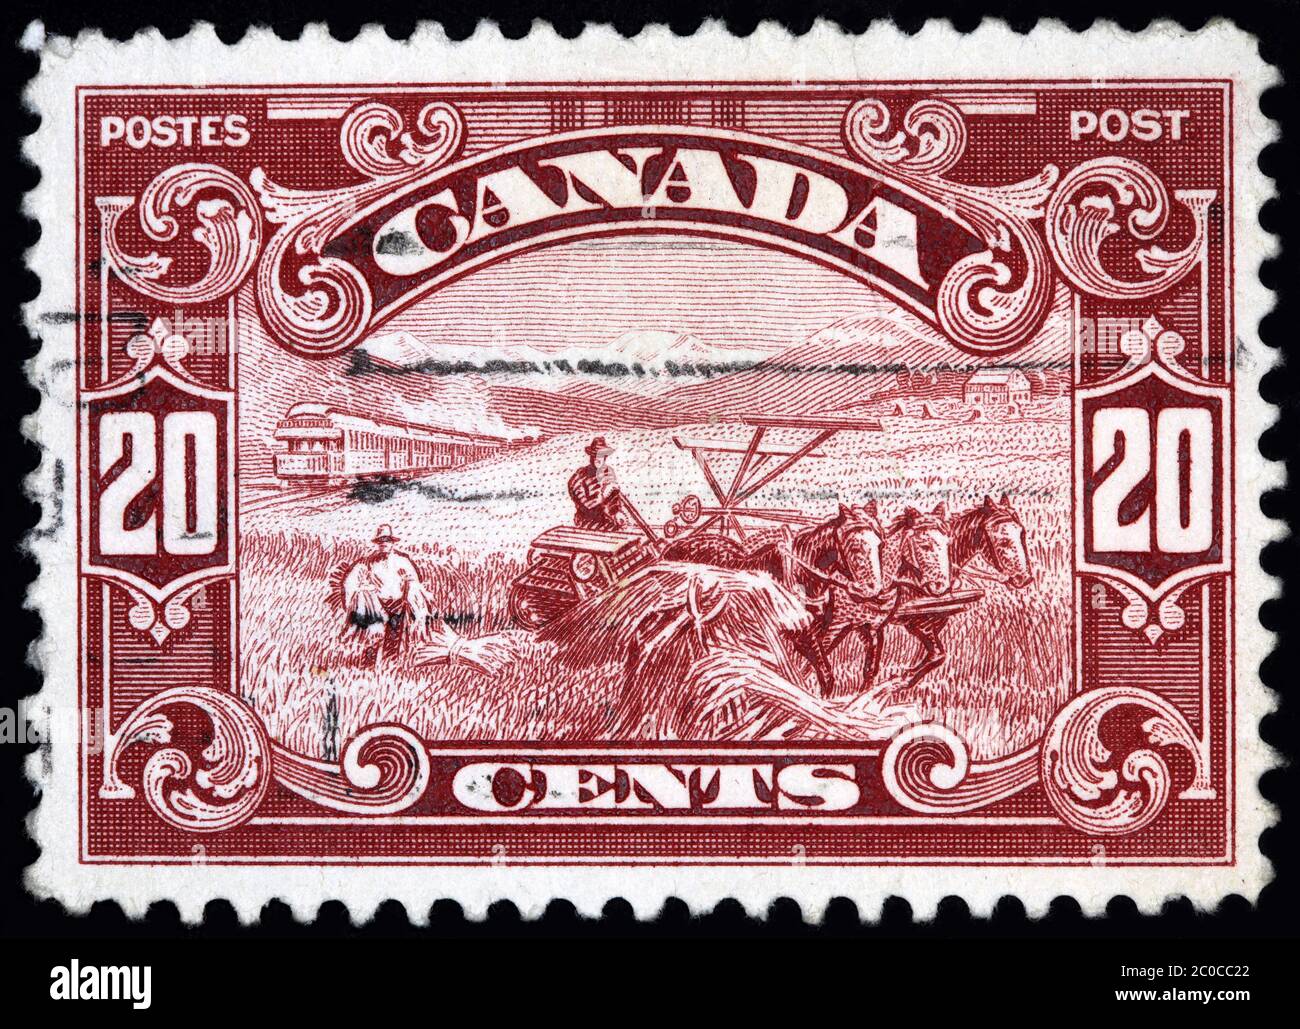 OTTAWA - VERS 1927 : timbre-poste canadien montrant du matériel agricole à l'ancienne tiré par des chevaux, en Alberta, avec les montagnes Rocheuses au Th Banque D'Images